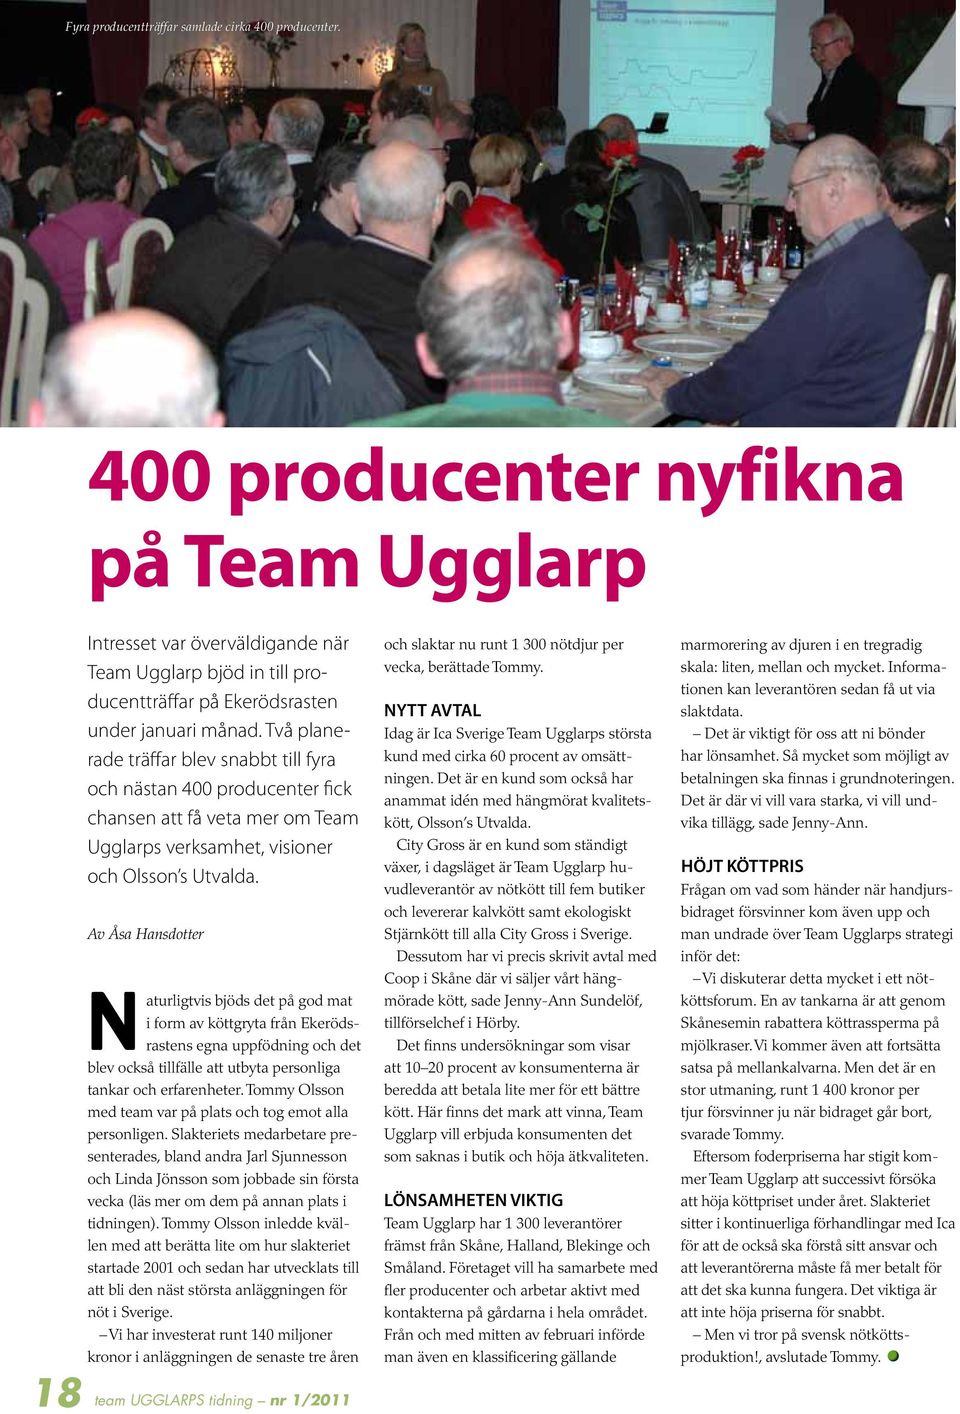 Två planerade träffar blev snabbt fyra och nästan 400 producenter fick chansen att få veta mer om Team Ugglarps verksamhet, visioner och Olsson s Utvalda.